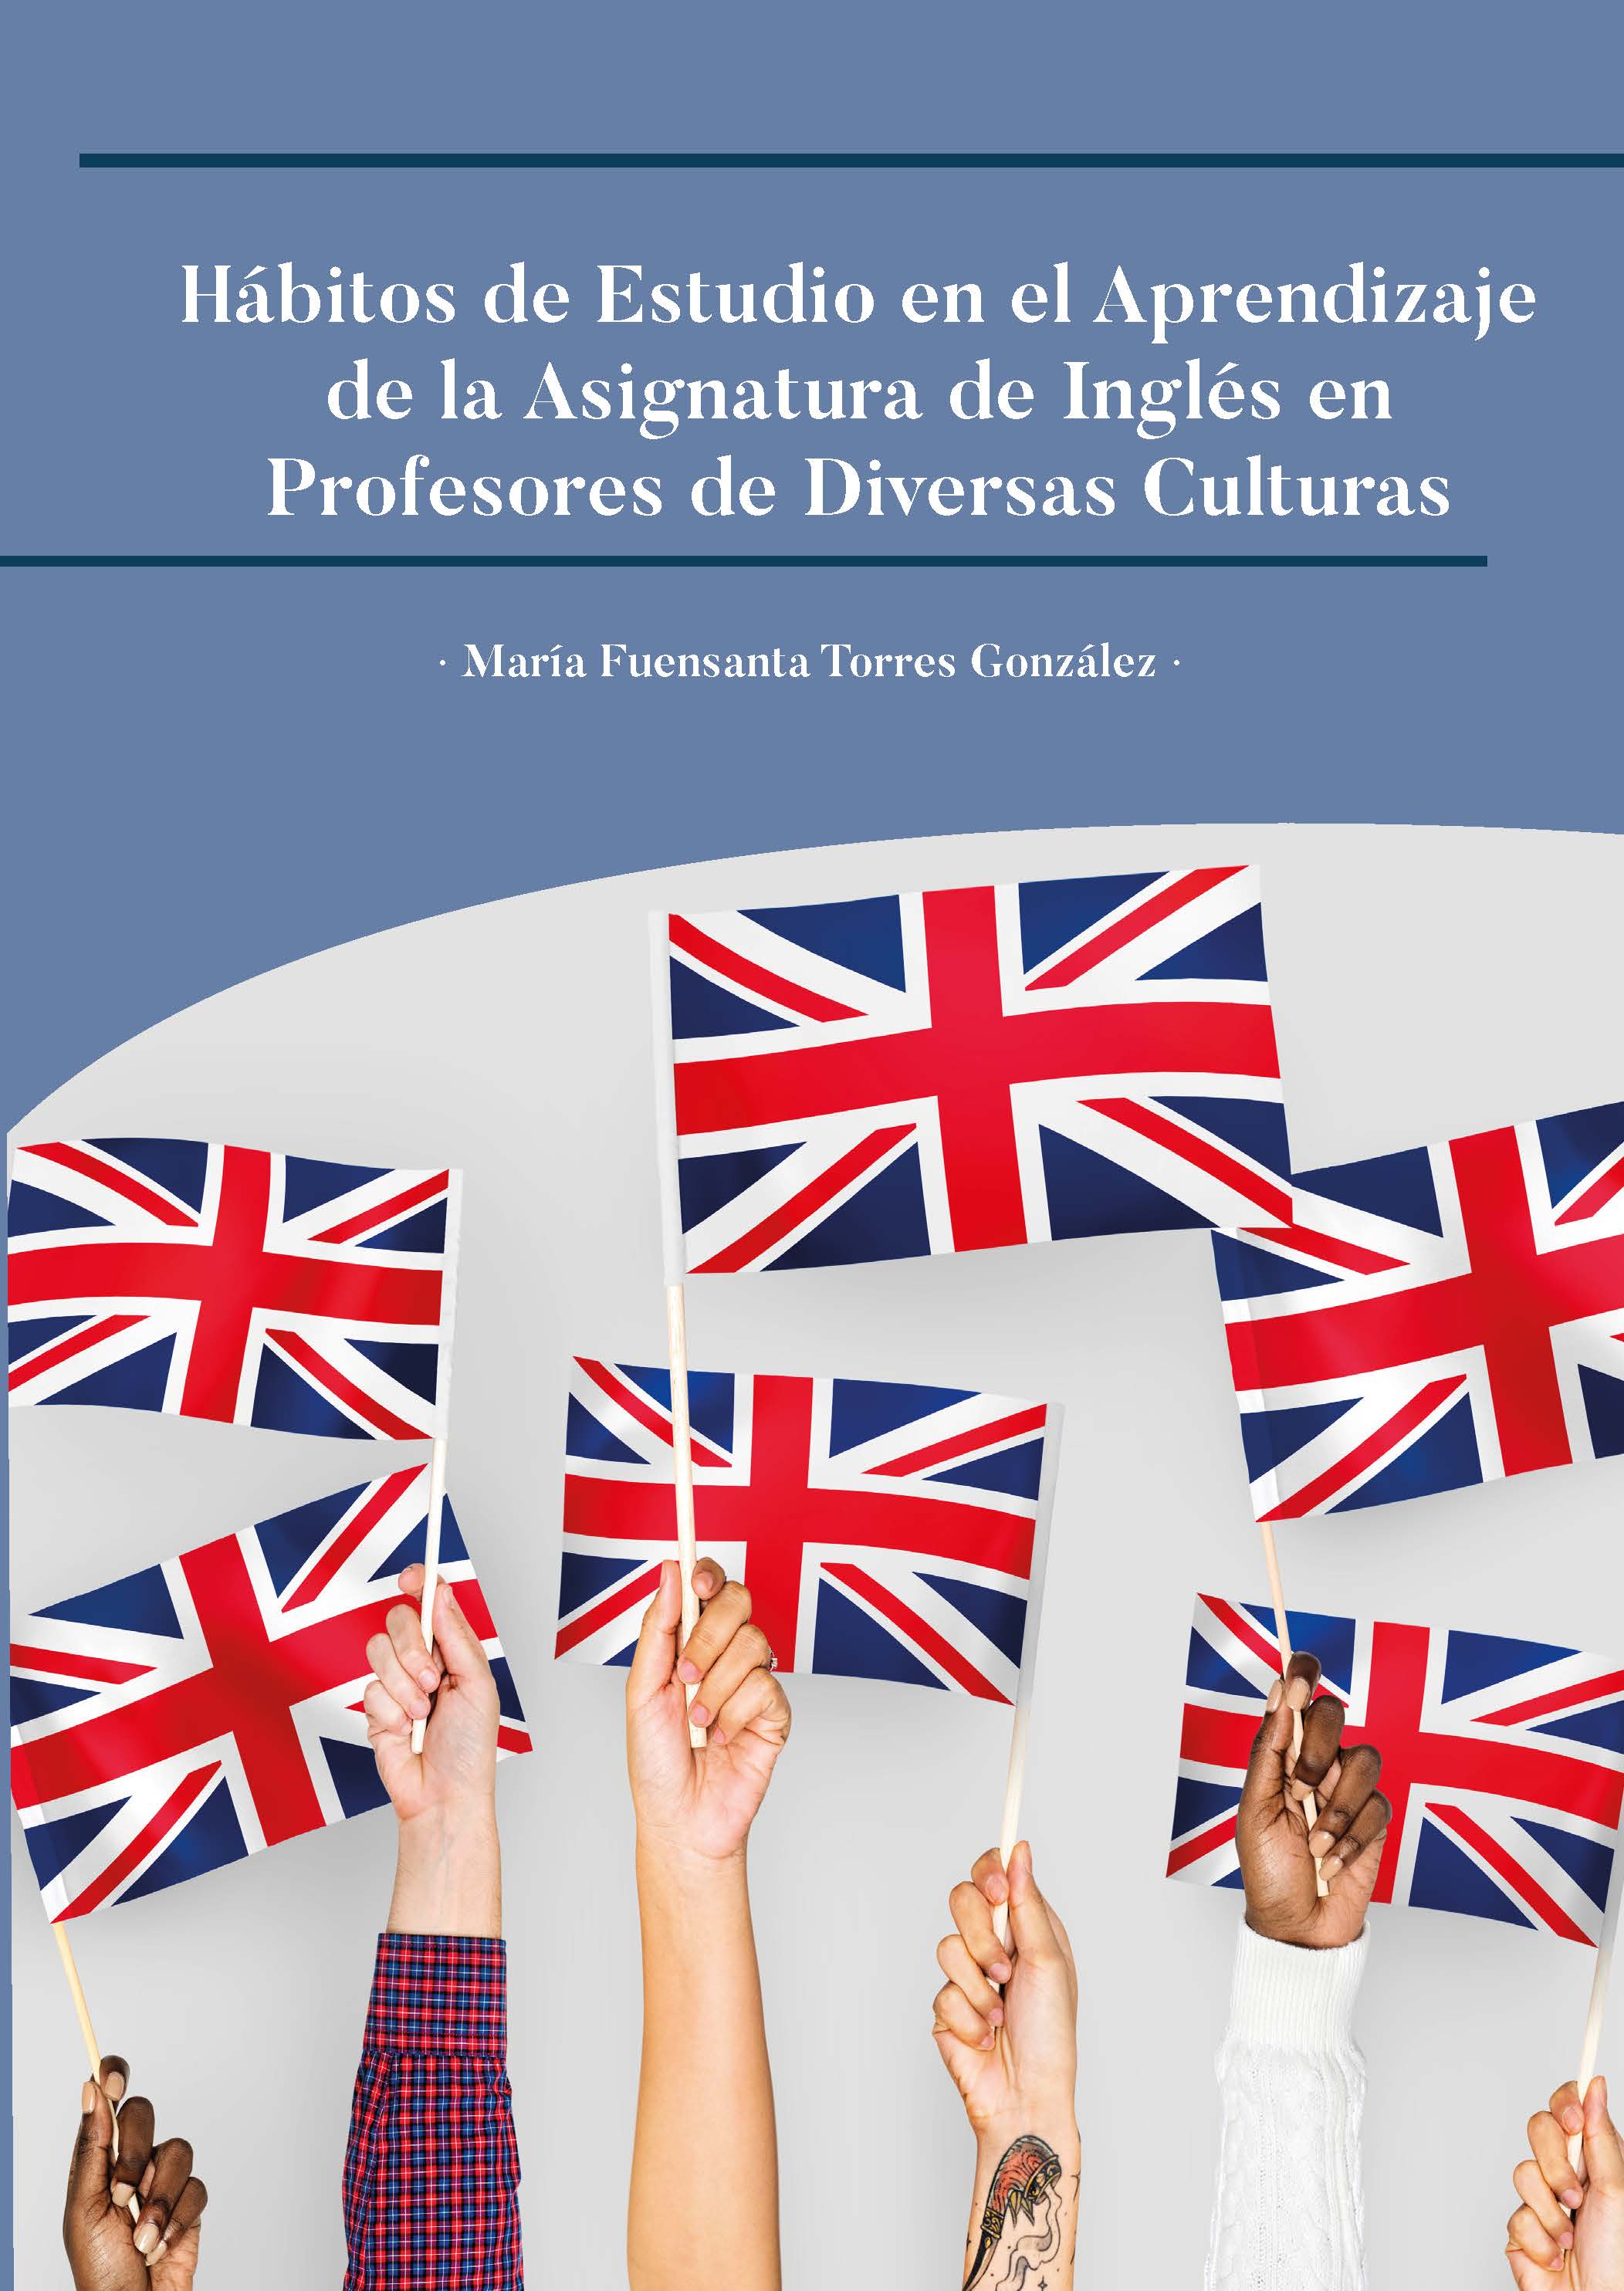 Trabajo Fin de Máster: “Hábitos de Estudio en el Aprendizaje de la Asignatura de Inglés en Profesores de Diversas Culturas”